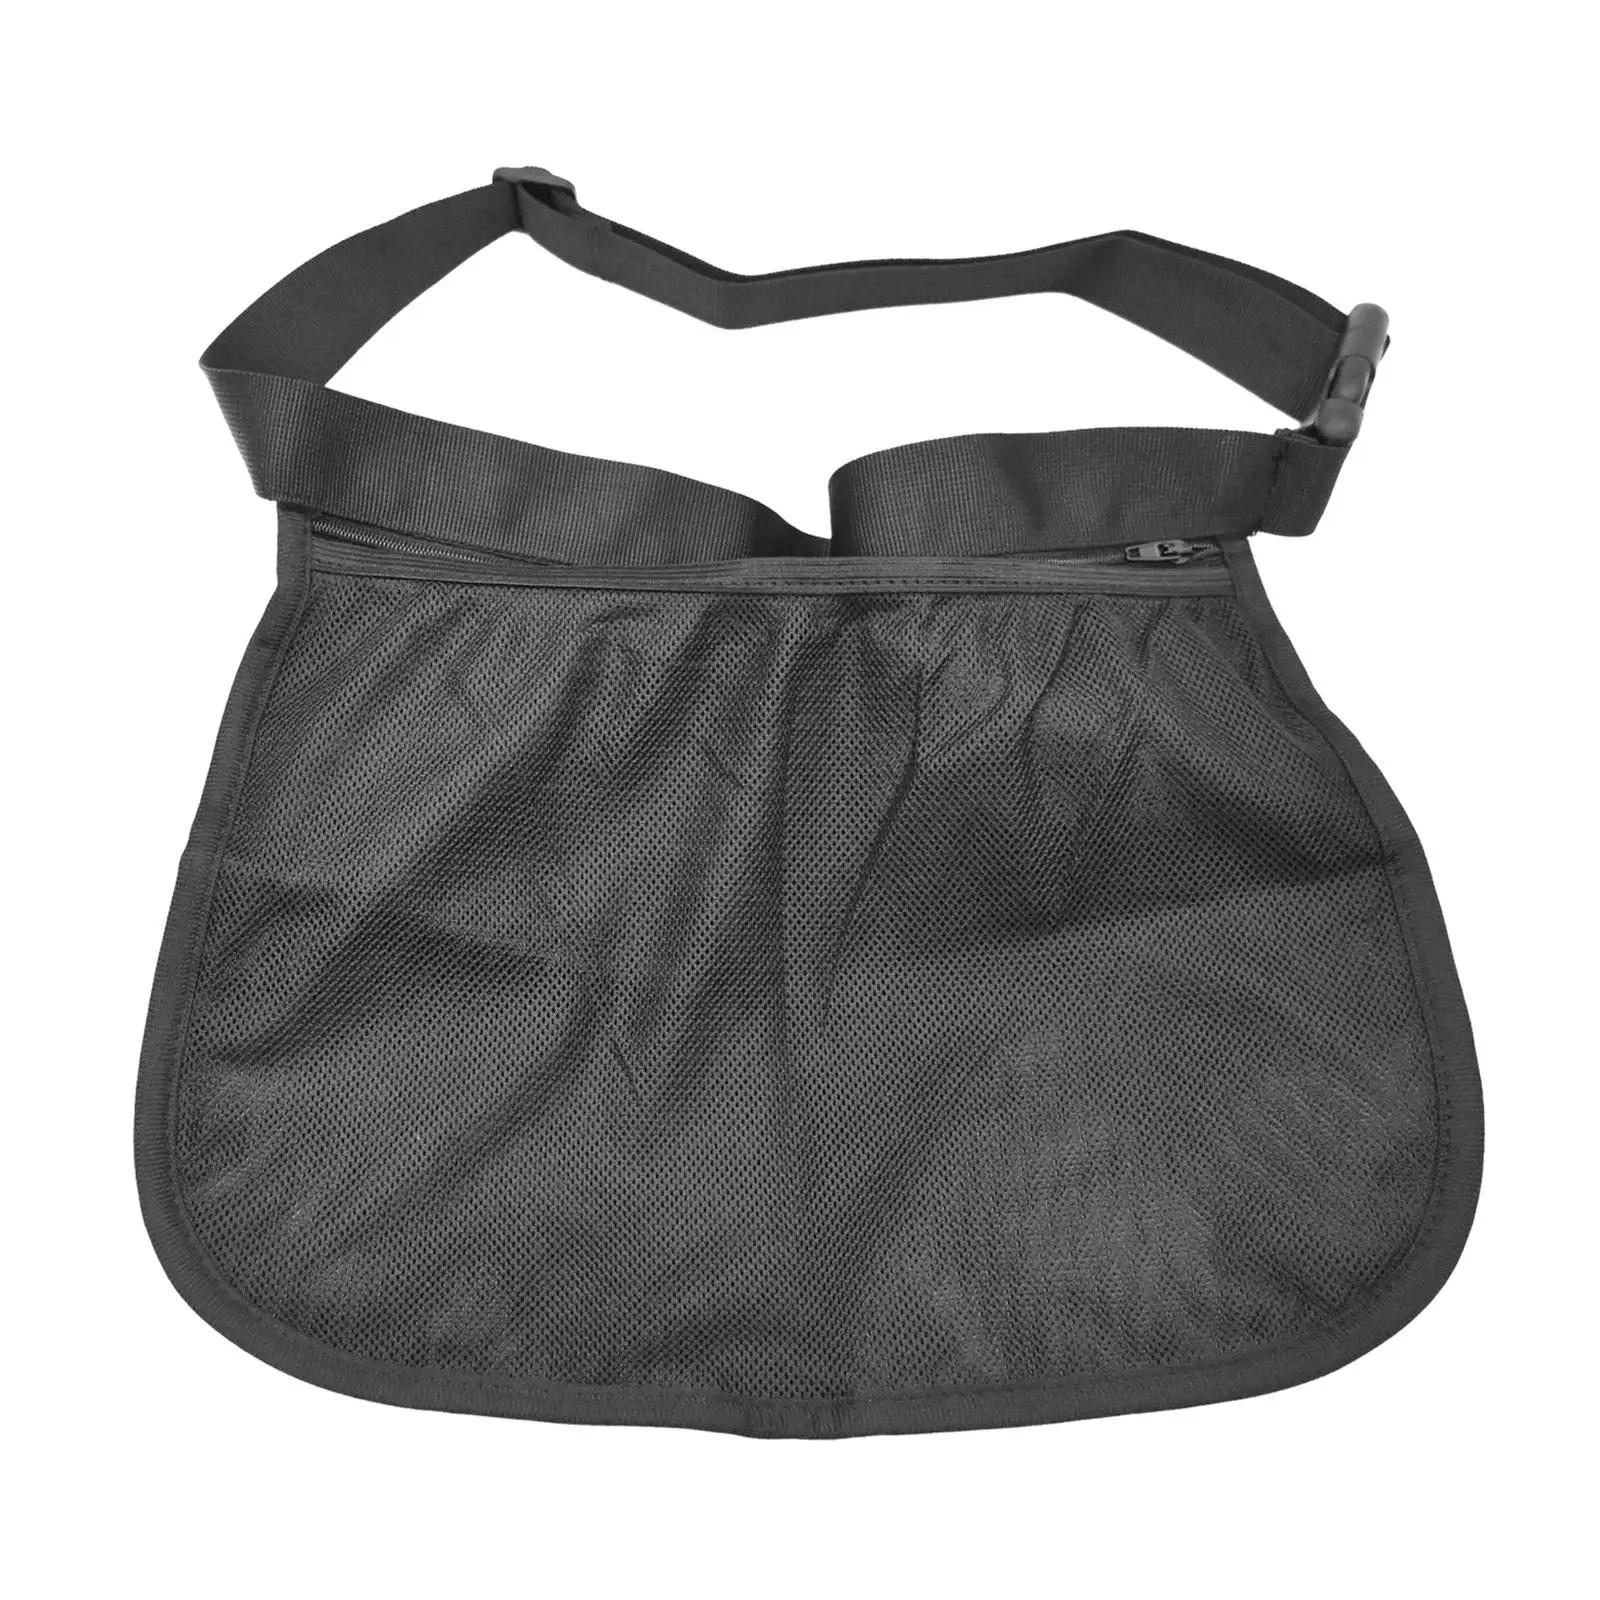 Tennis Ball Holder Tennis Ball Storage Bag for Workout Women